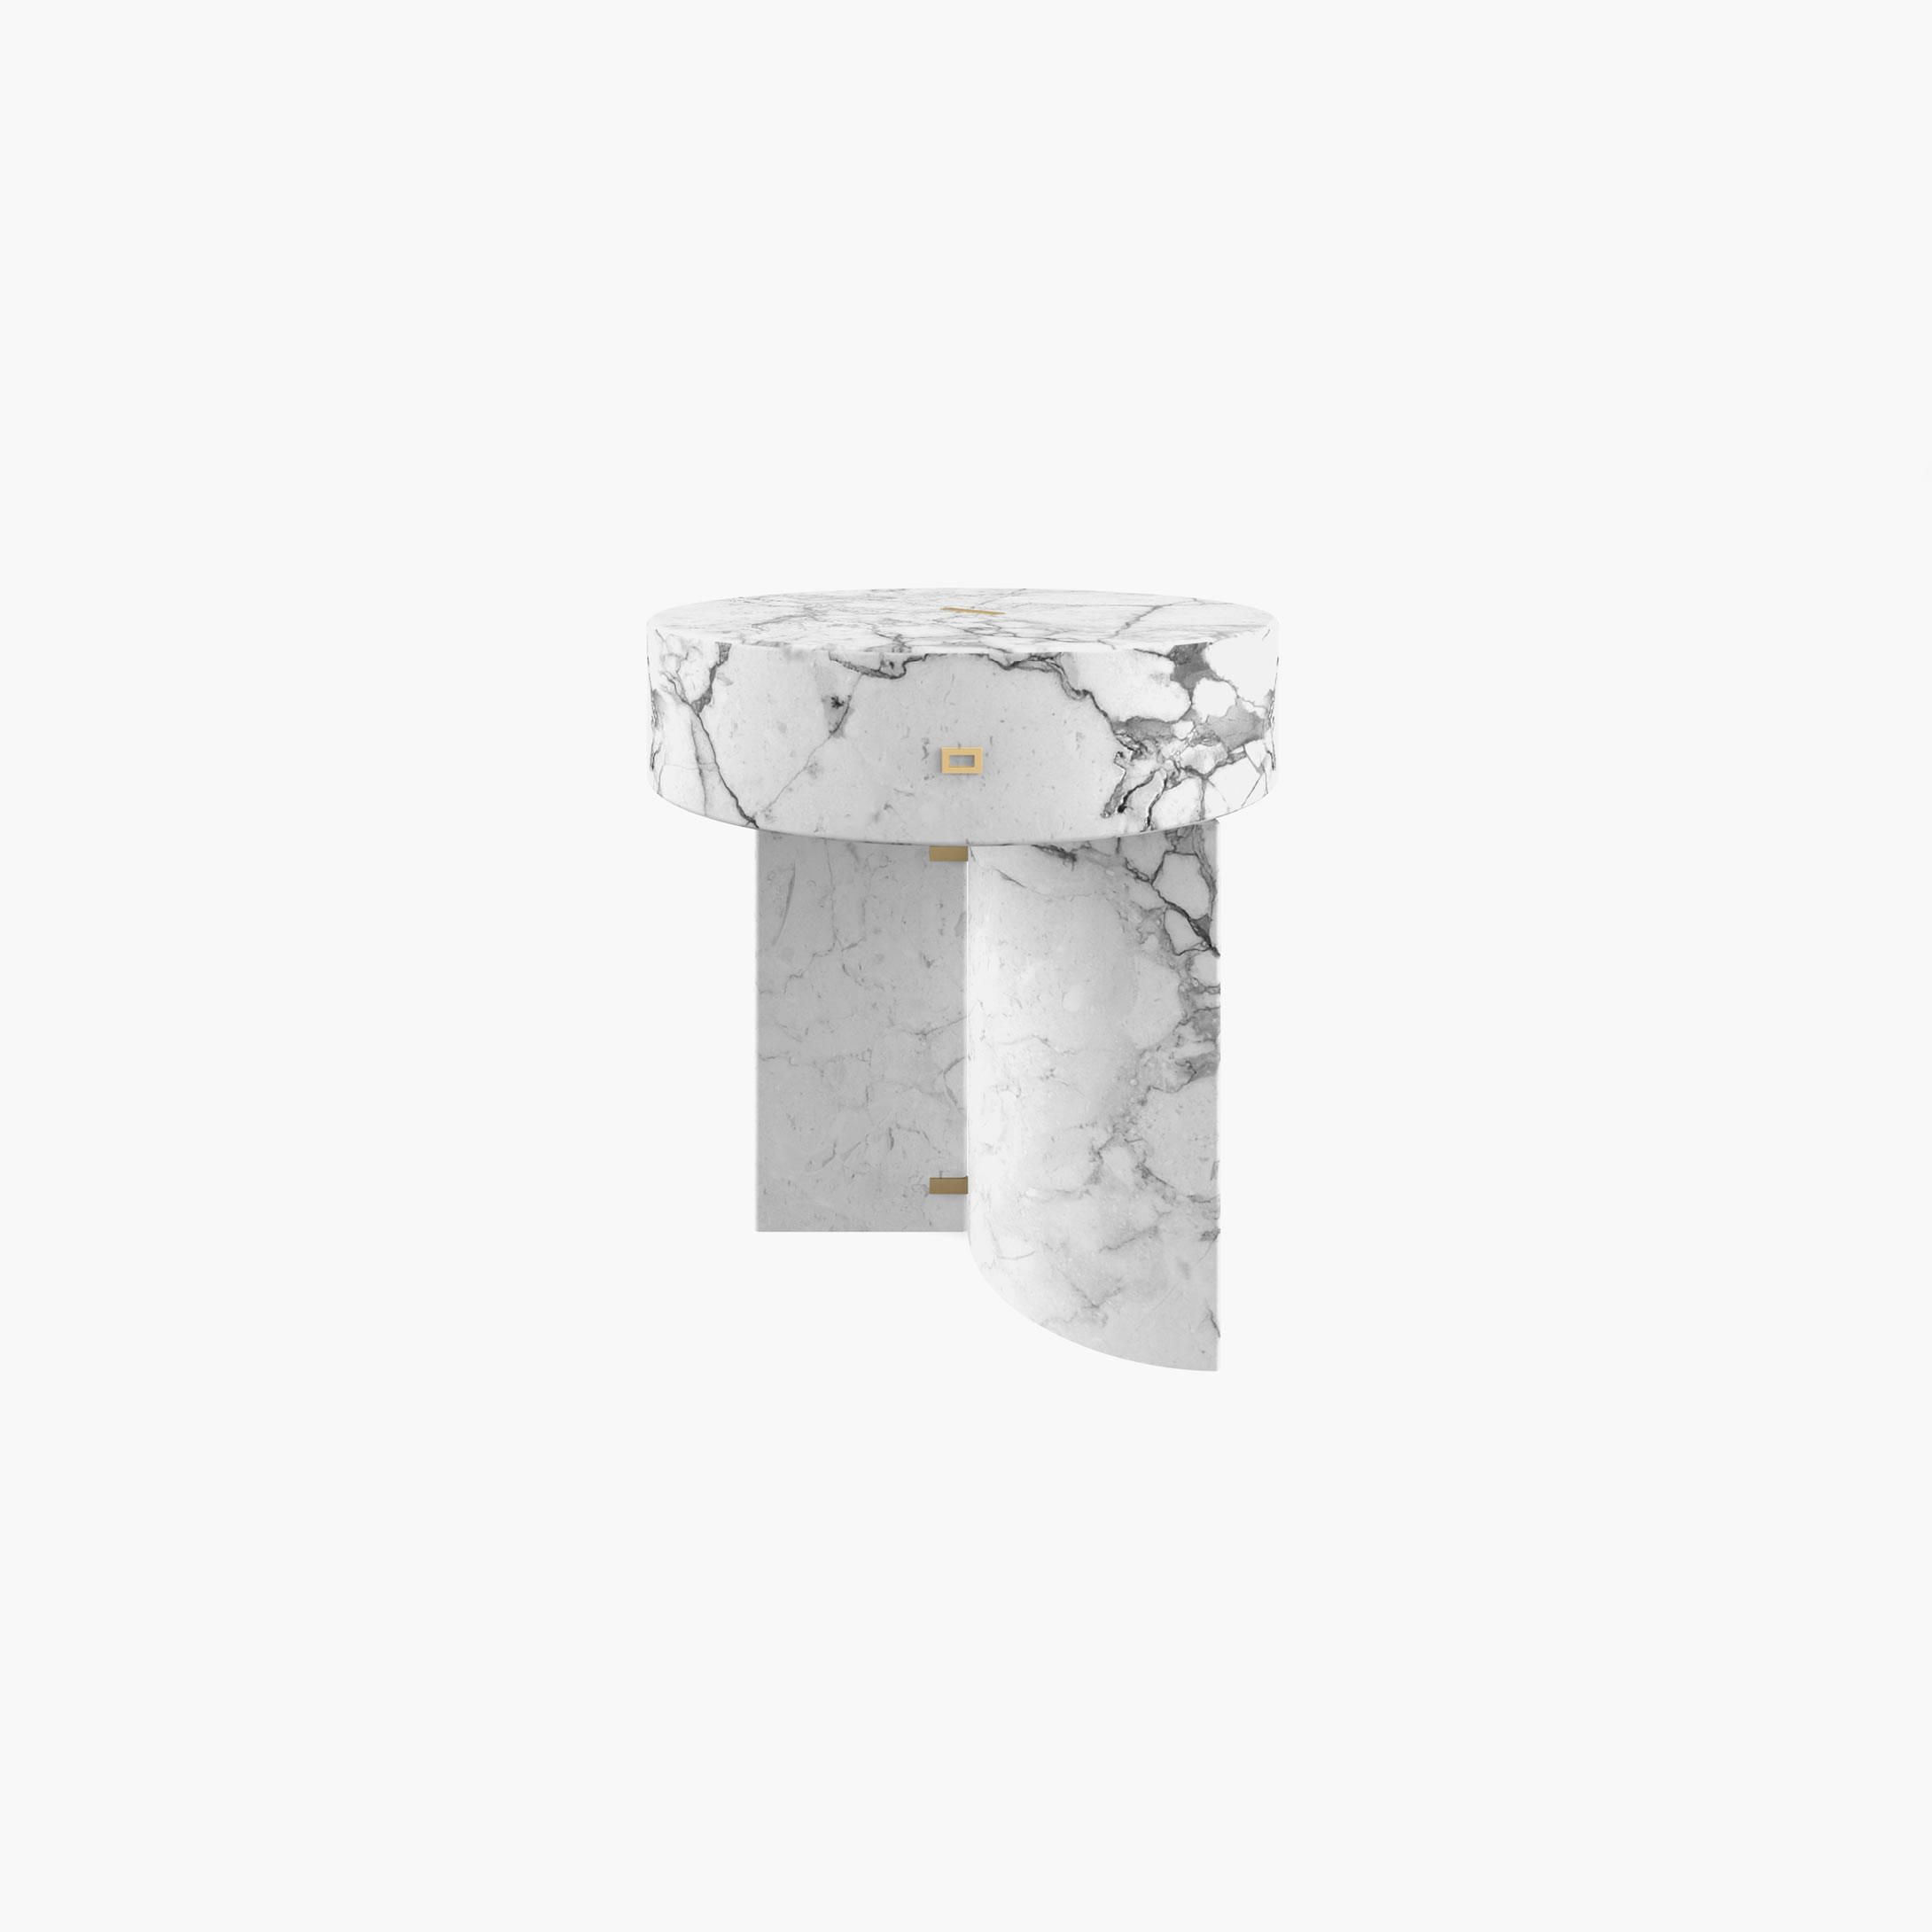 Beistelltisch rund Zylinder Quader Prisma Weiss Arabescato Marmor minimalistisch Wohnzimmer Innenarchitektur Beistelltische FS 128 a FELIX SCHWAKE